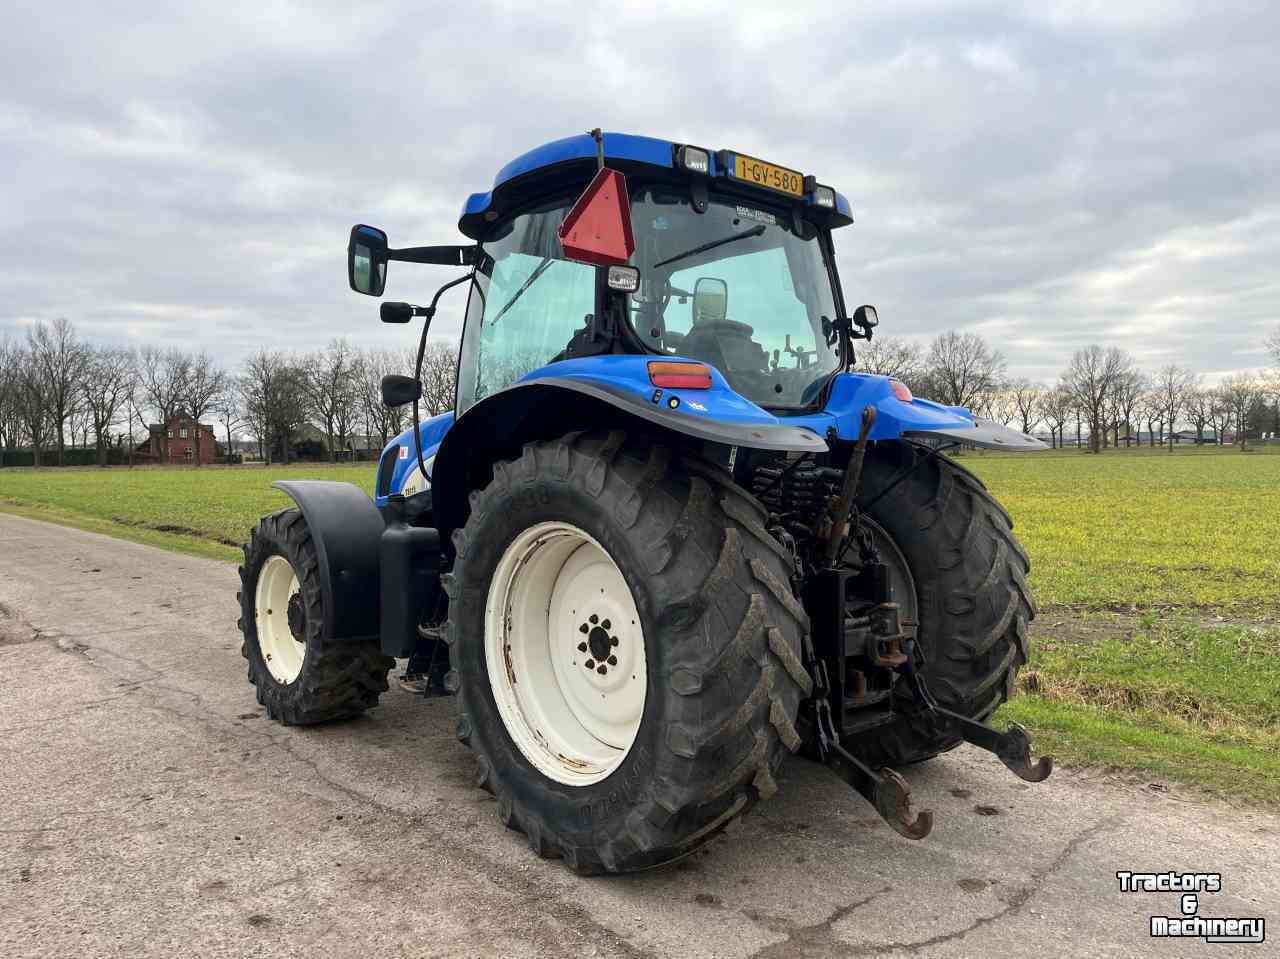 Schlepper / Traktoren New Holland TS115A